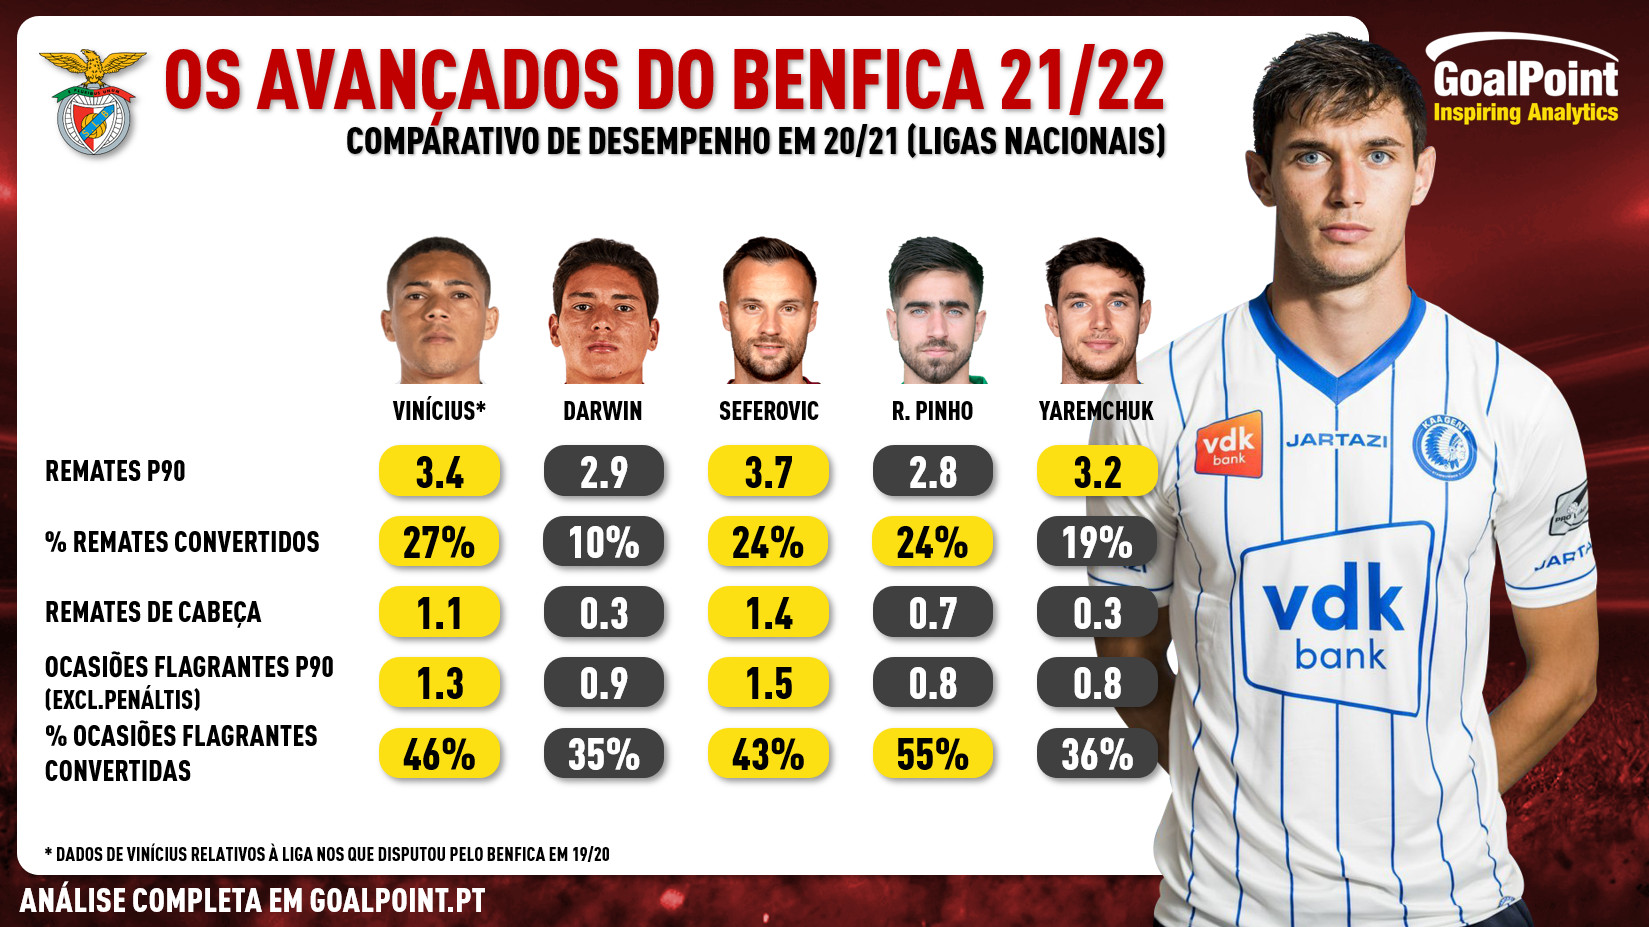 oint-Reforcos-Yaremchuk-Benfica-1b-infog